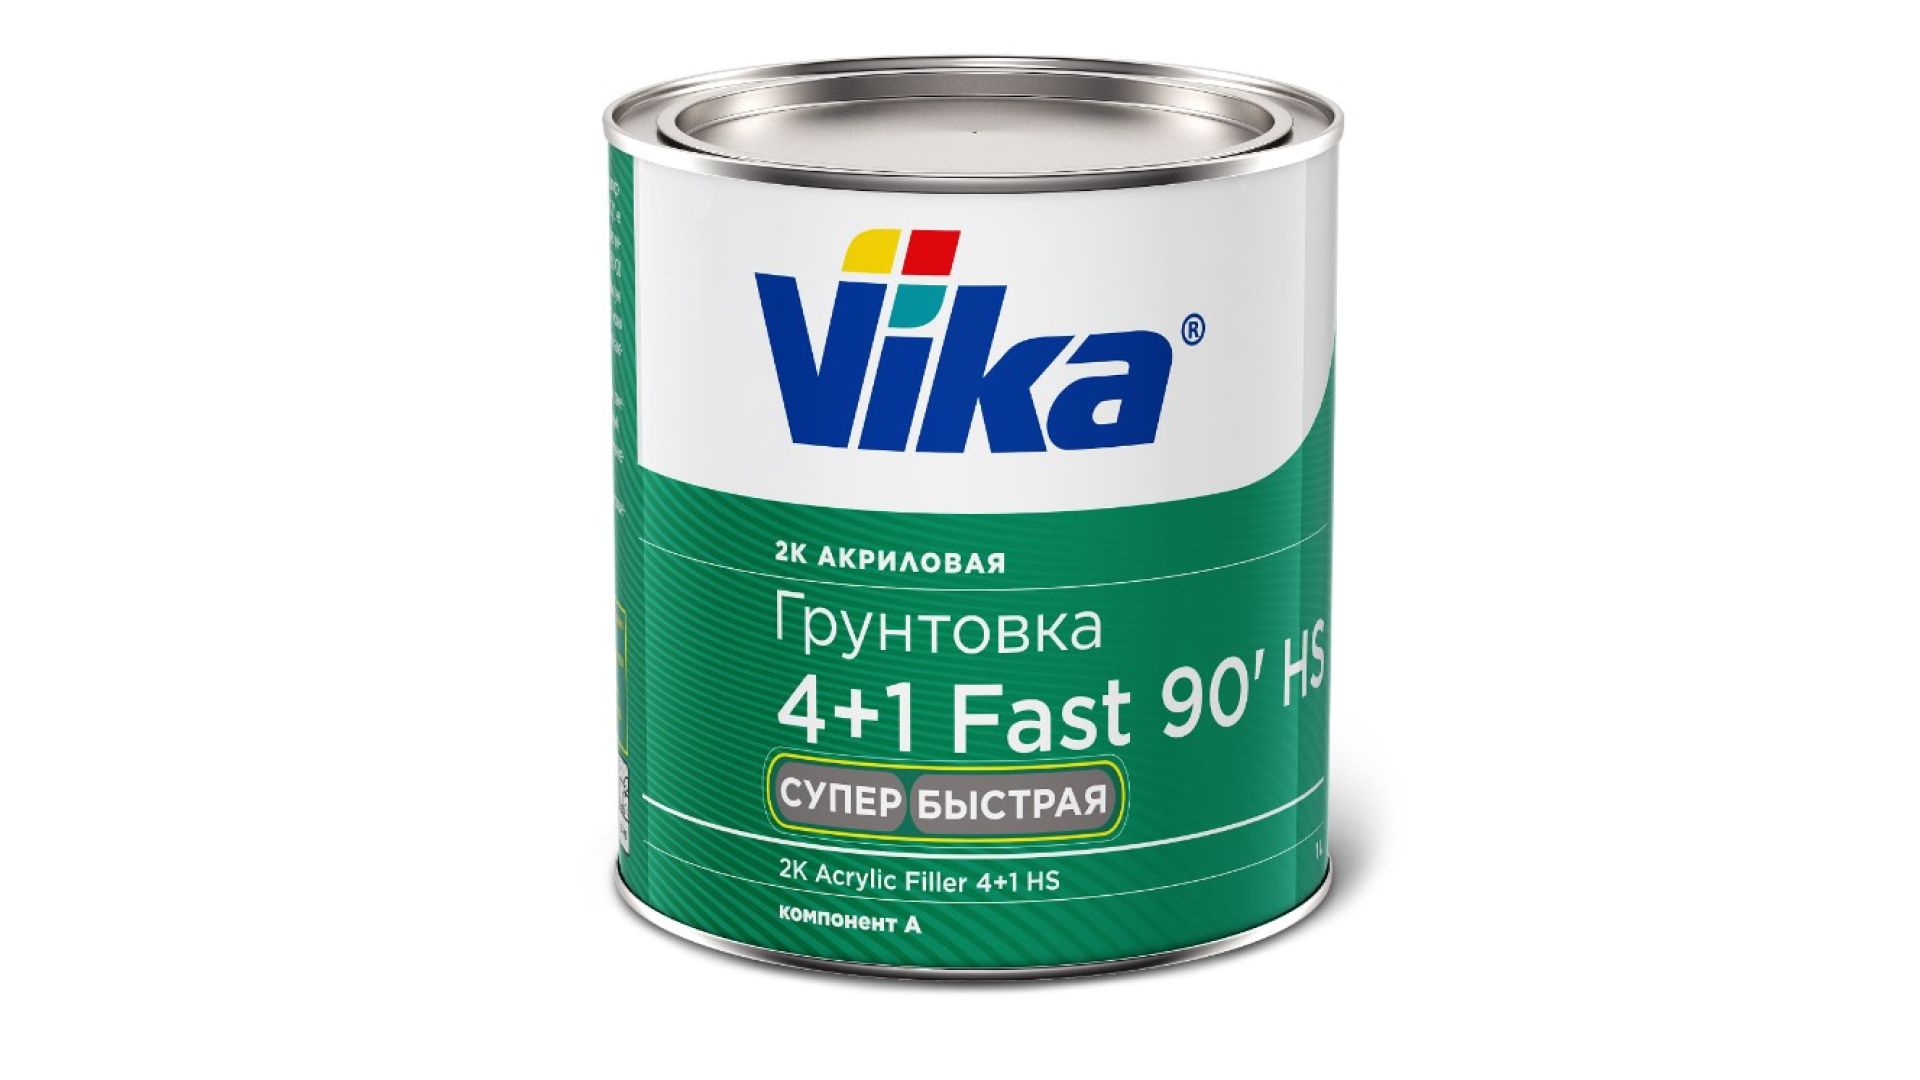 У Vika новый продукт: грунтовка 4+1 Fast 90' HS Супербыстрая